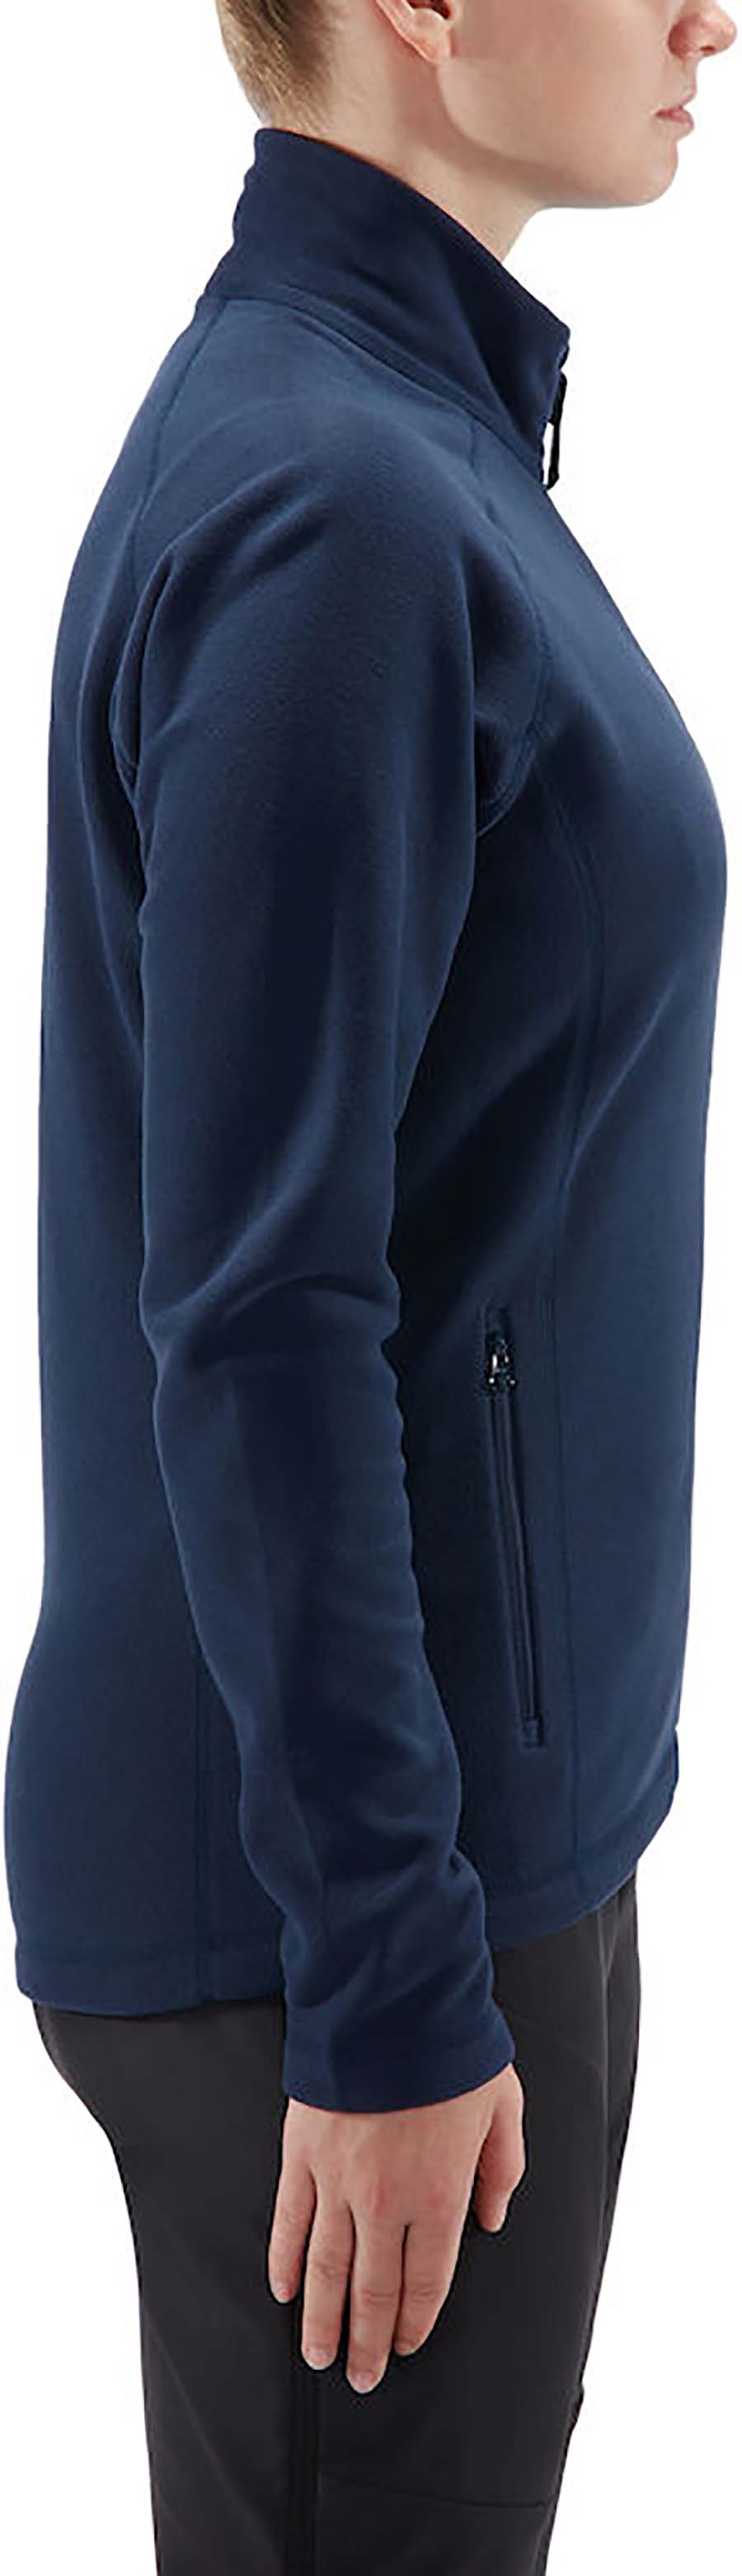 Haglofs Astro Women's Microfleece Zip Up Jacket